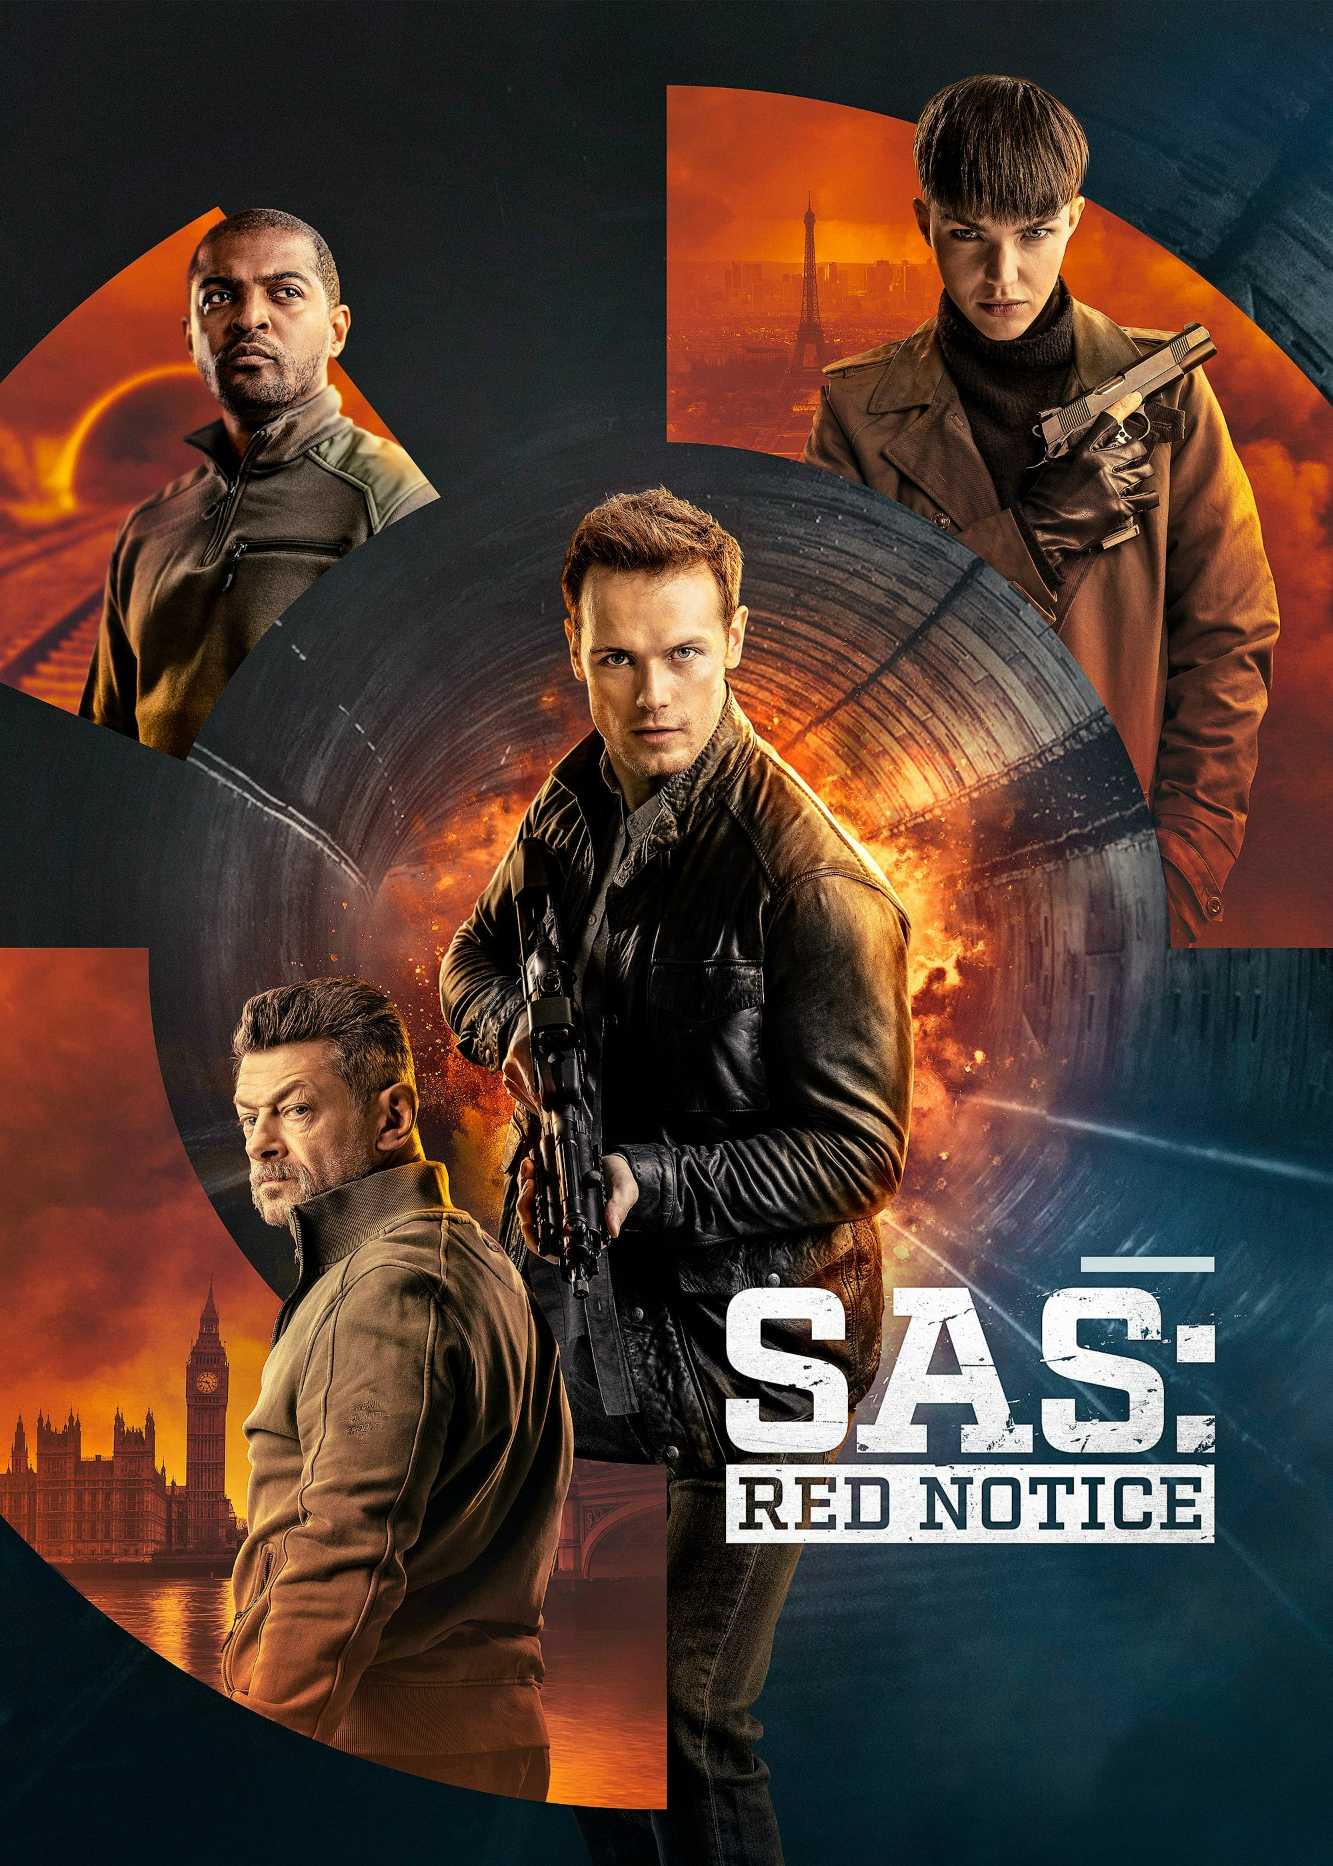 SAS: Red Notice - SAS: Red Notice